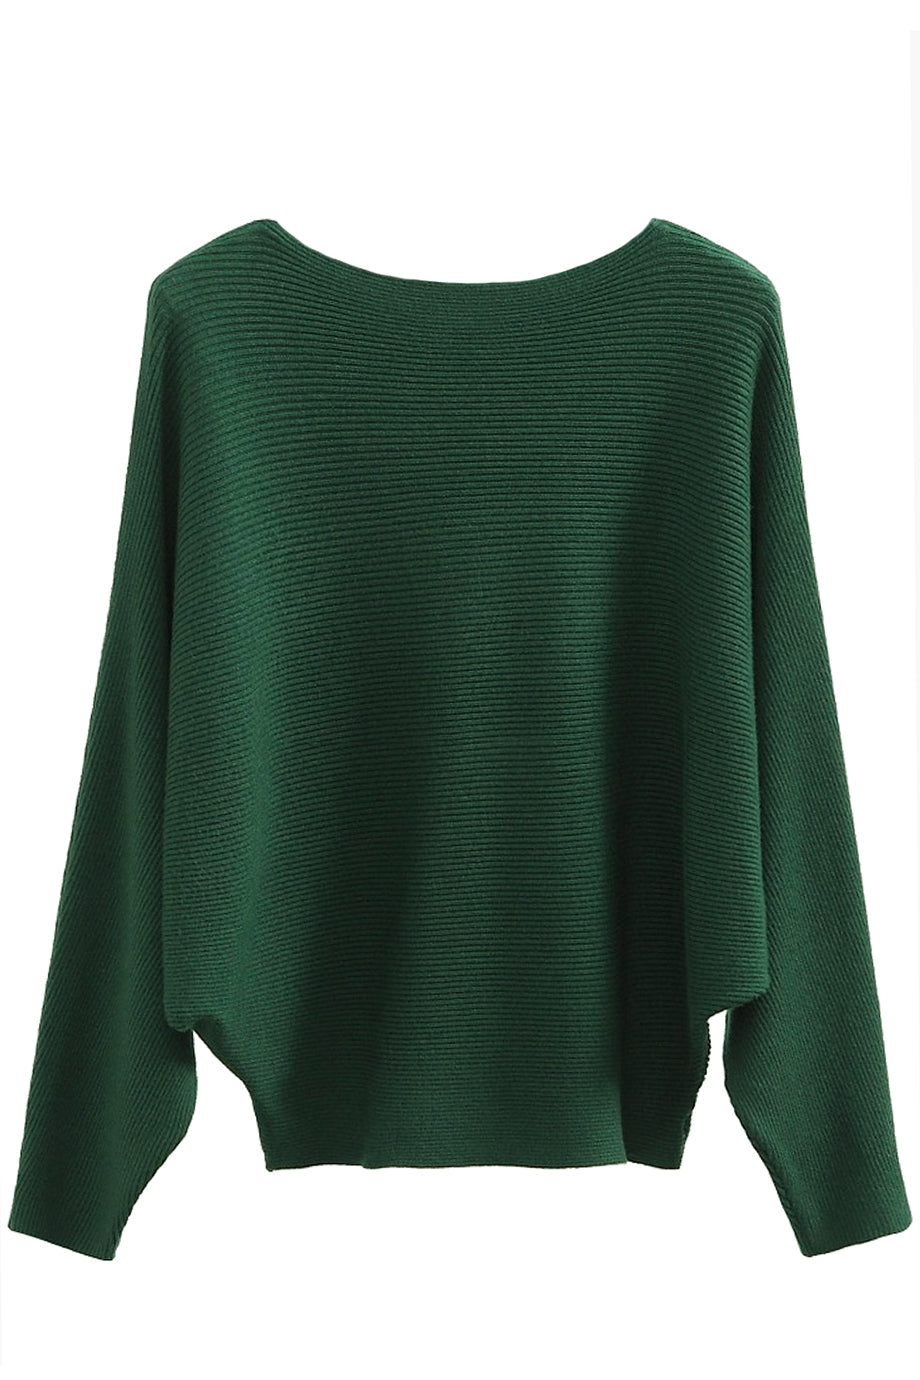 Πράσινη Βαμβακερή Μπλούζα με Cashmere | Γυναικεία Ρούχα - Laura Ferri